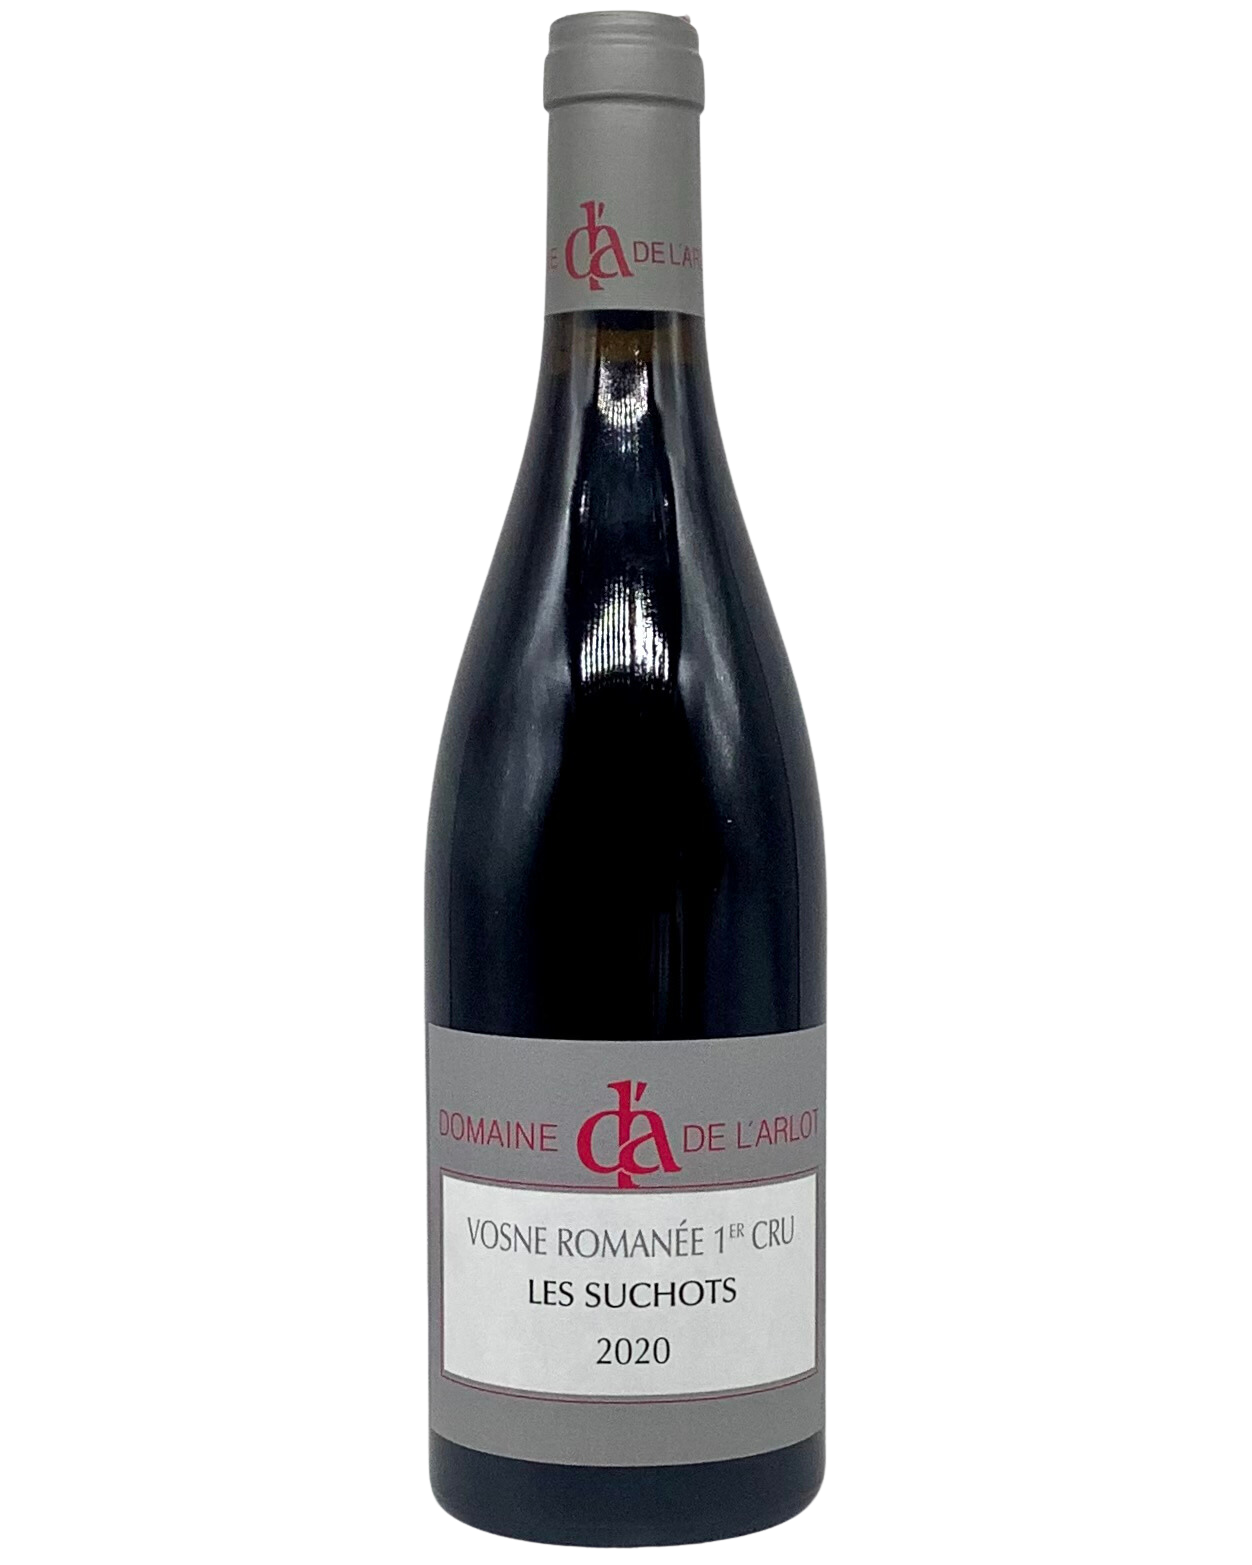 Domaine de L'Arlot, Pinot Noir, Vosne Romanée 1er Cru Les Suchots, Côte de Nuits, Burgundy, France 2020 biodynamic